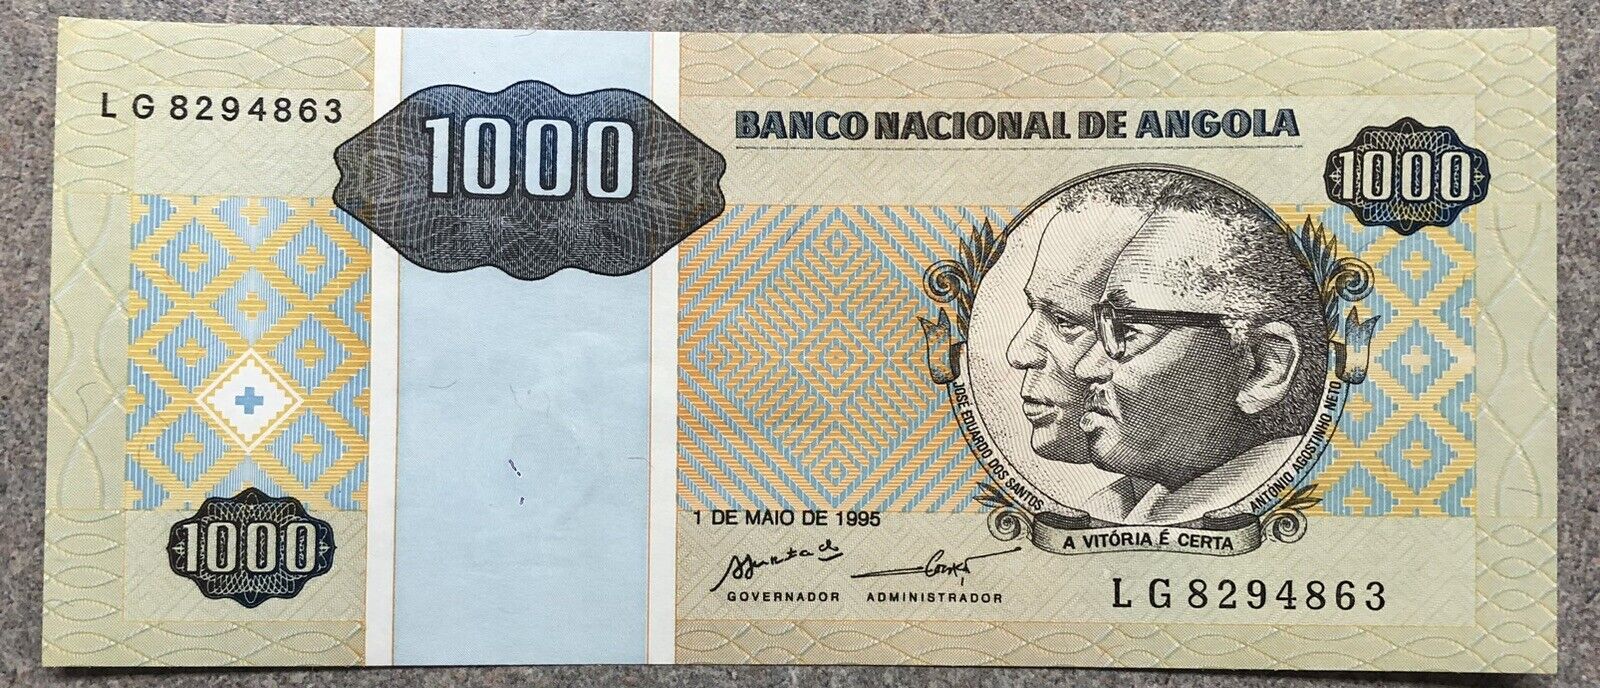 Uncirculated 1995 Angola 1000 Kwanzas Banknote